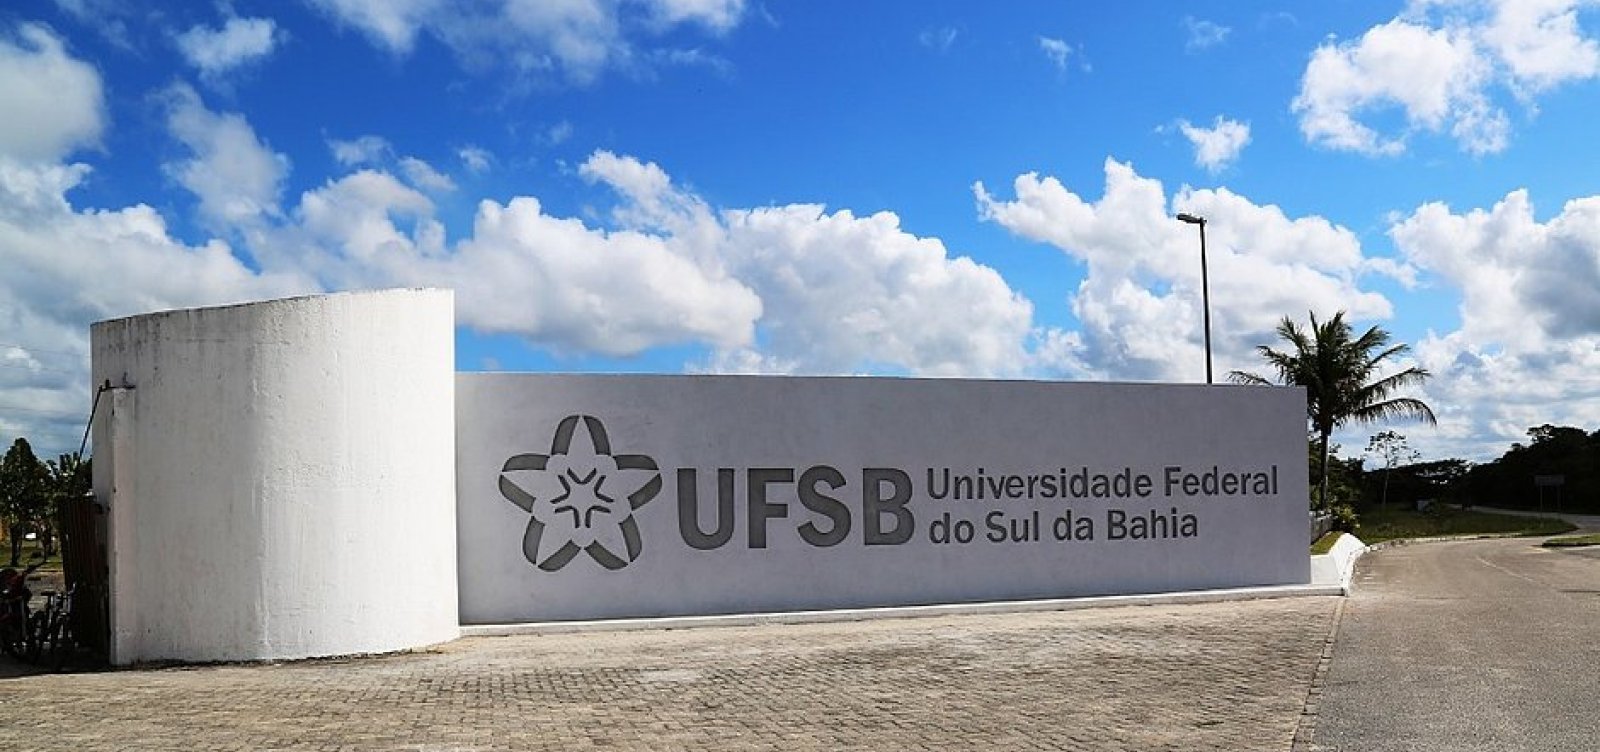 Professores anunciam greve em universidades federais nesta segunda-feira; UFSB e UFRB estão na lista 